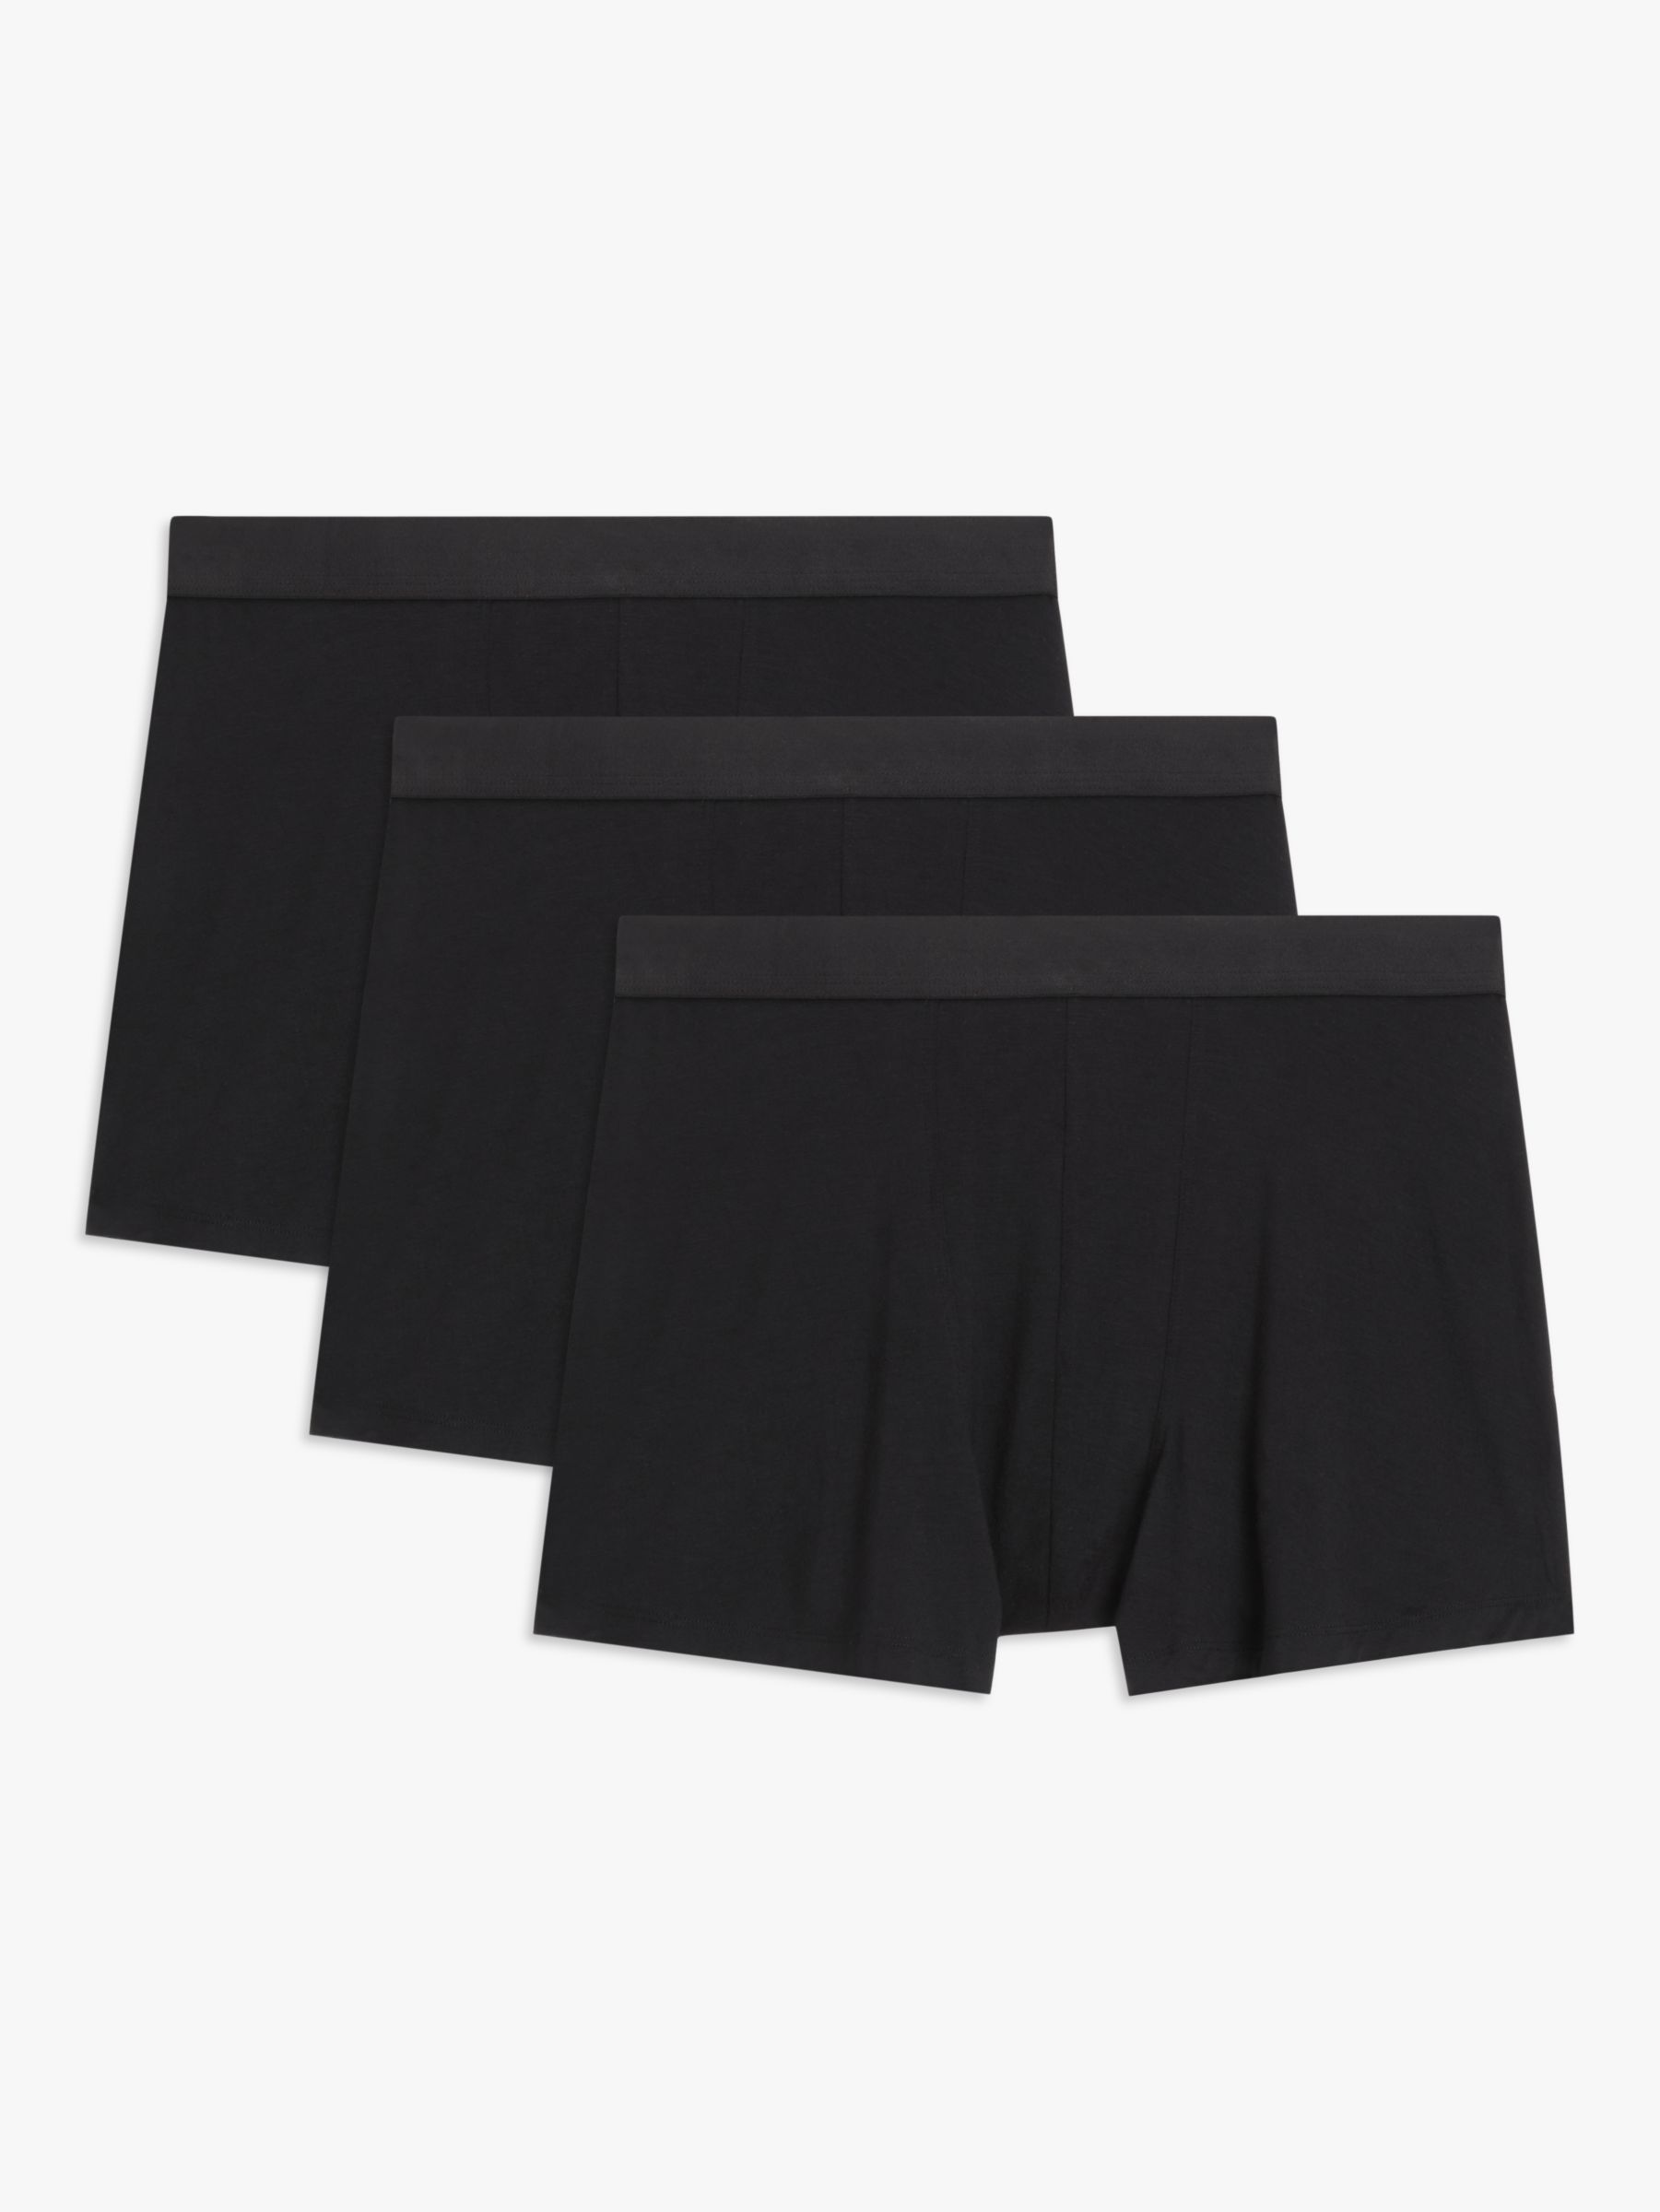 John Lewis Premium Ultra Soft Modal Trunks, Pack of 3, Black, XL